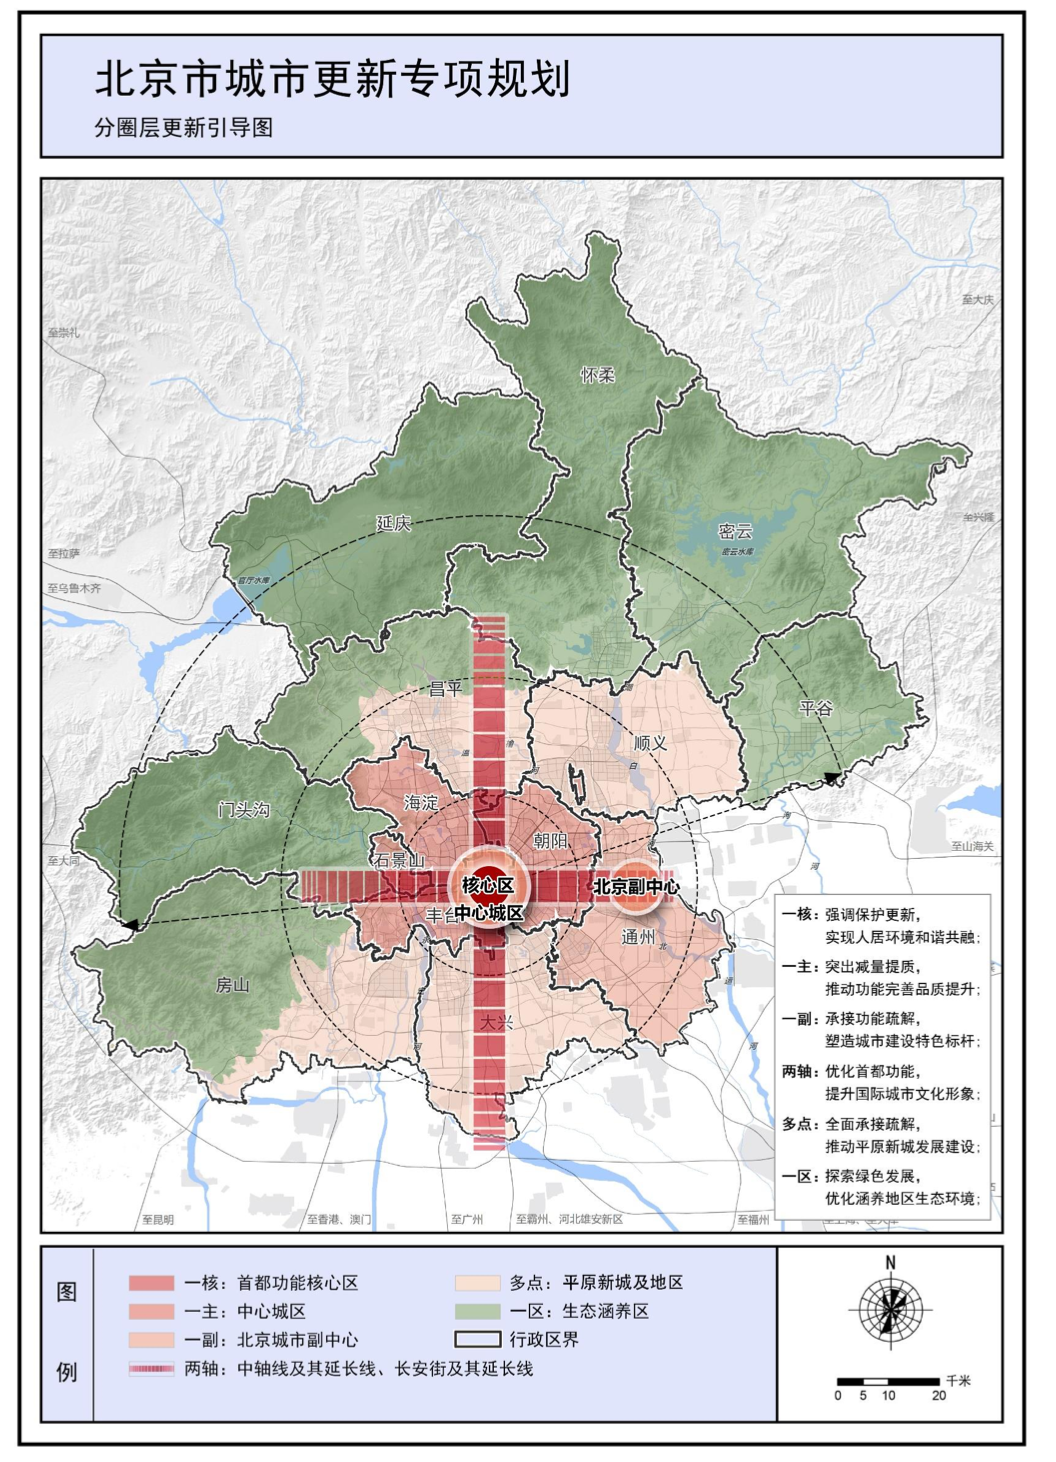 分圈层更新引导图。图源：《北京市城市更新专项规划(北京市“十四五”时期城市更新规划)》